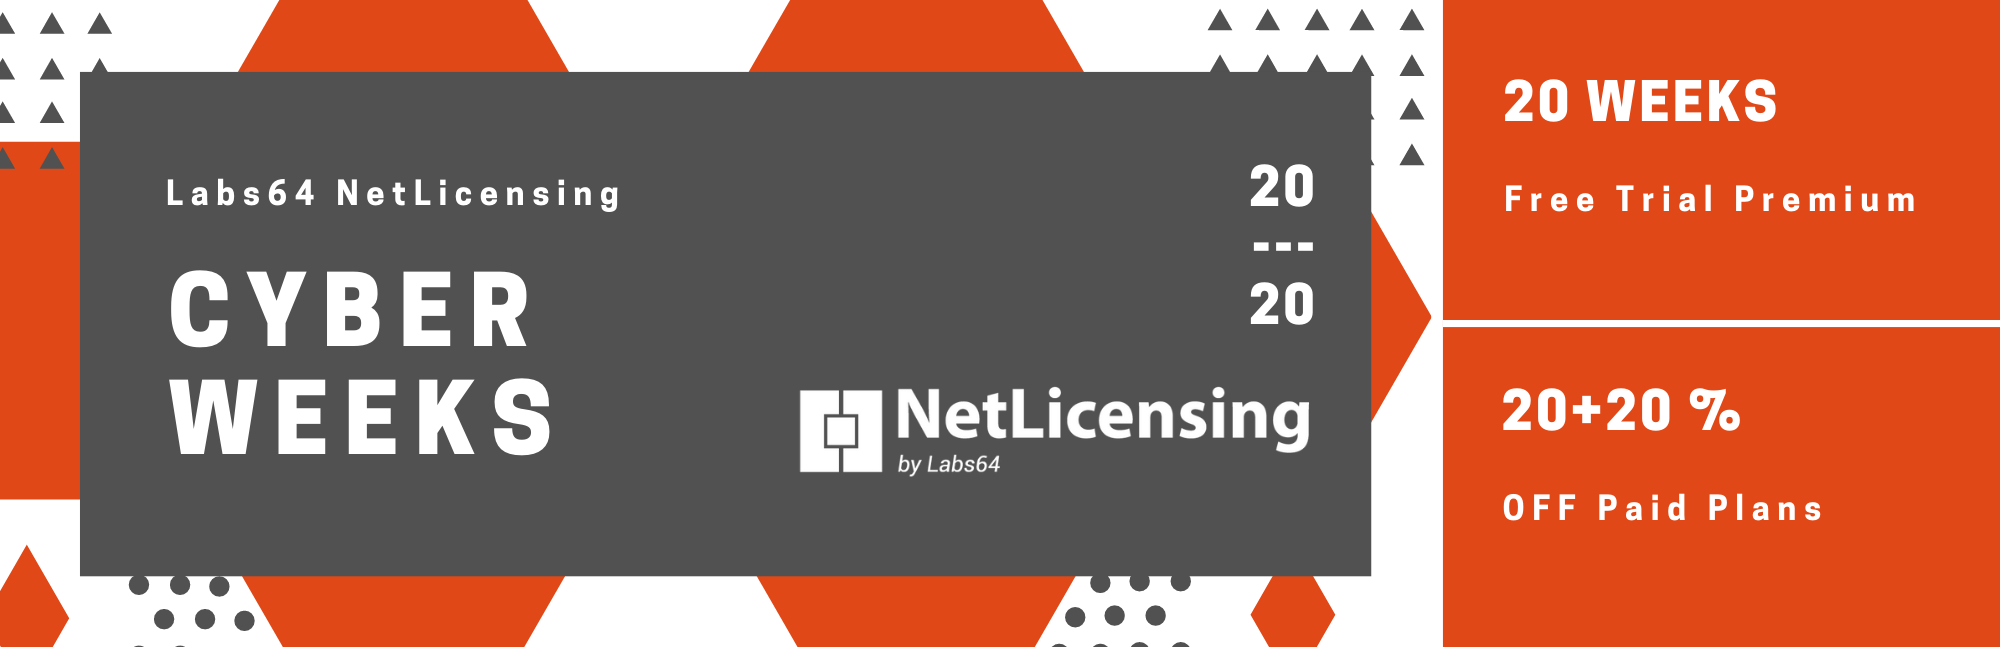 Labs64 NetLicensing - Cyber Weeks Offer - 2020